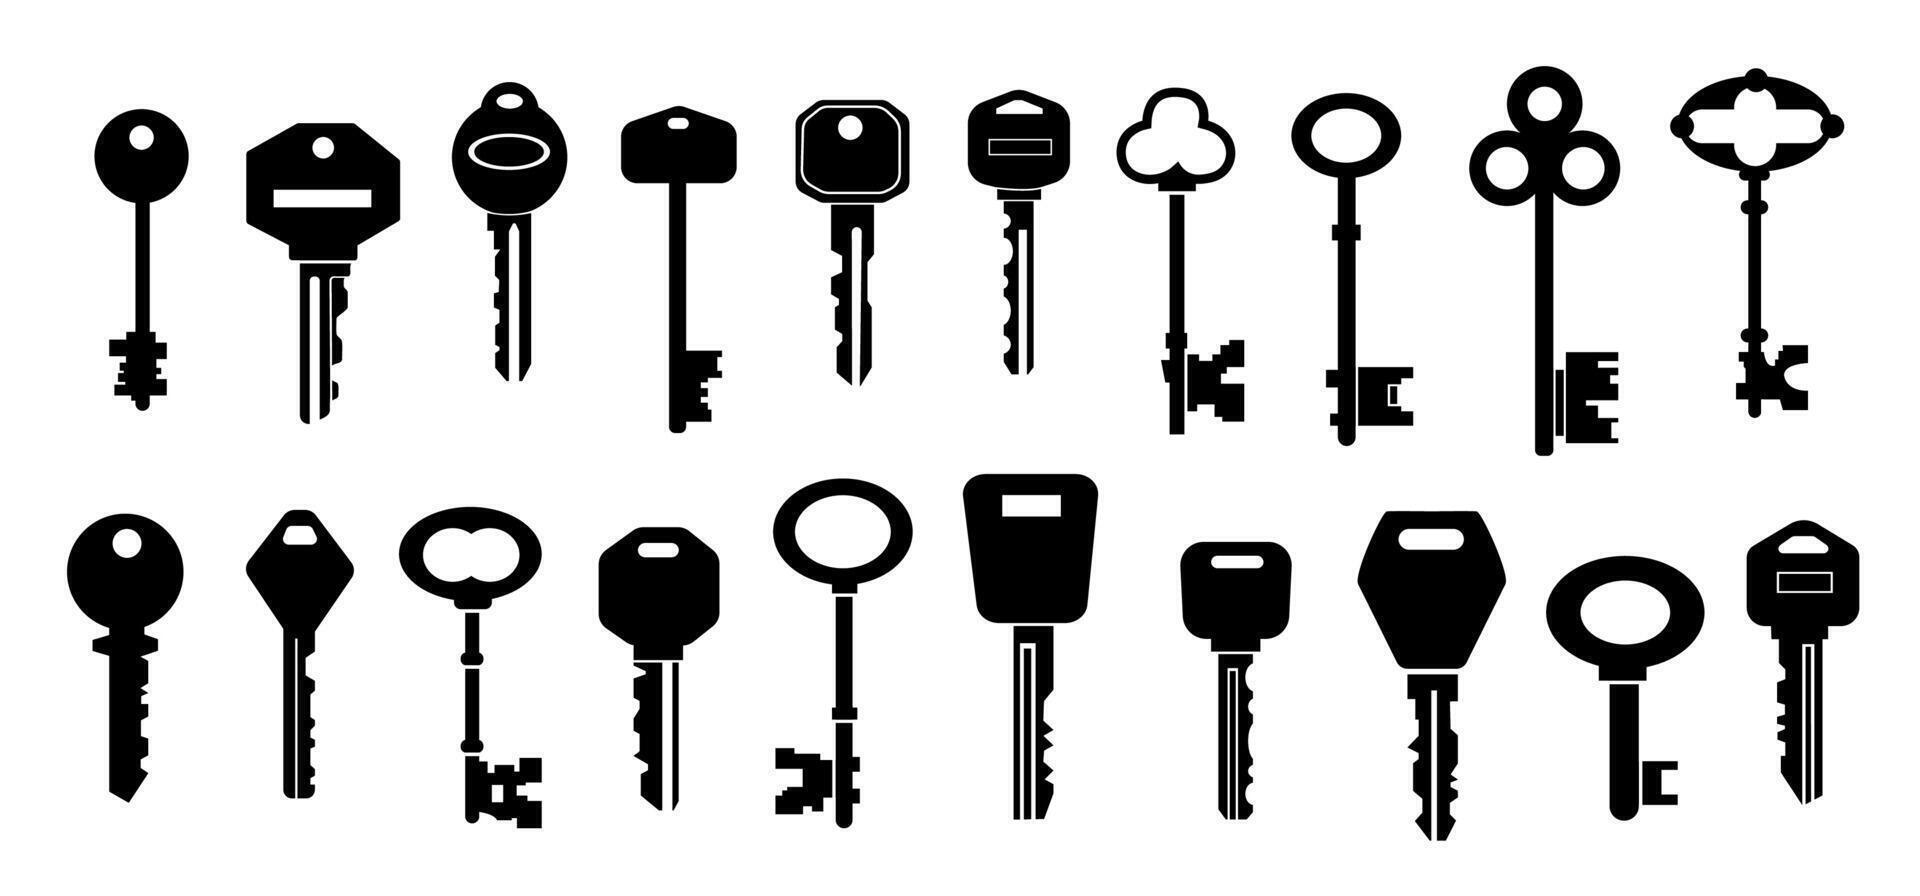 sleutels silhouetten. zwart vormen van modern en wijnoogst sleutel verzameling met verschillend hoofden maten en vormen. vector echt landgoed logo en veiligheid pictogrammen reeks